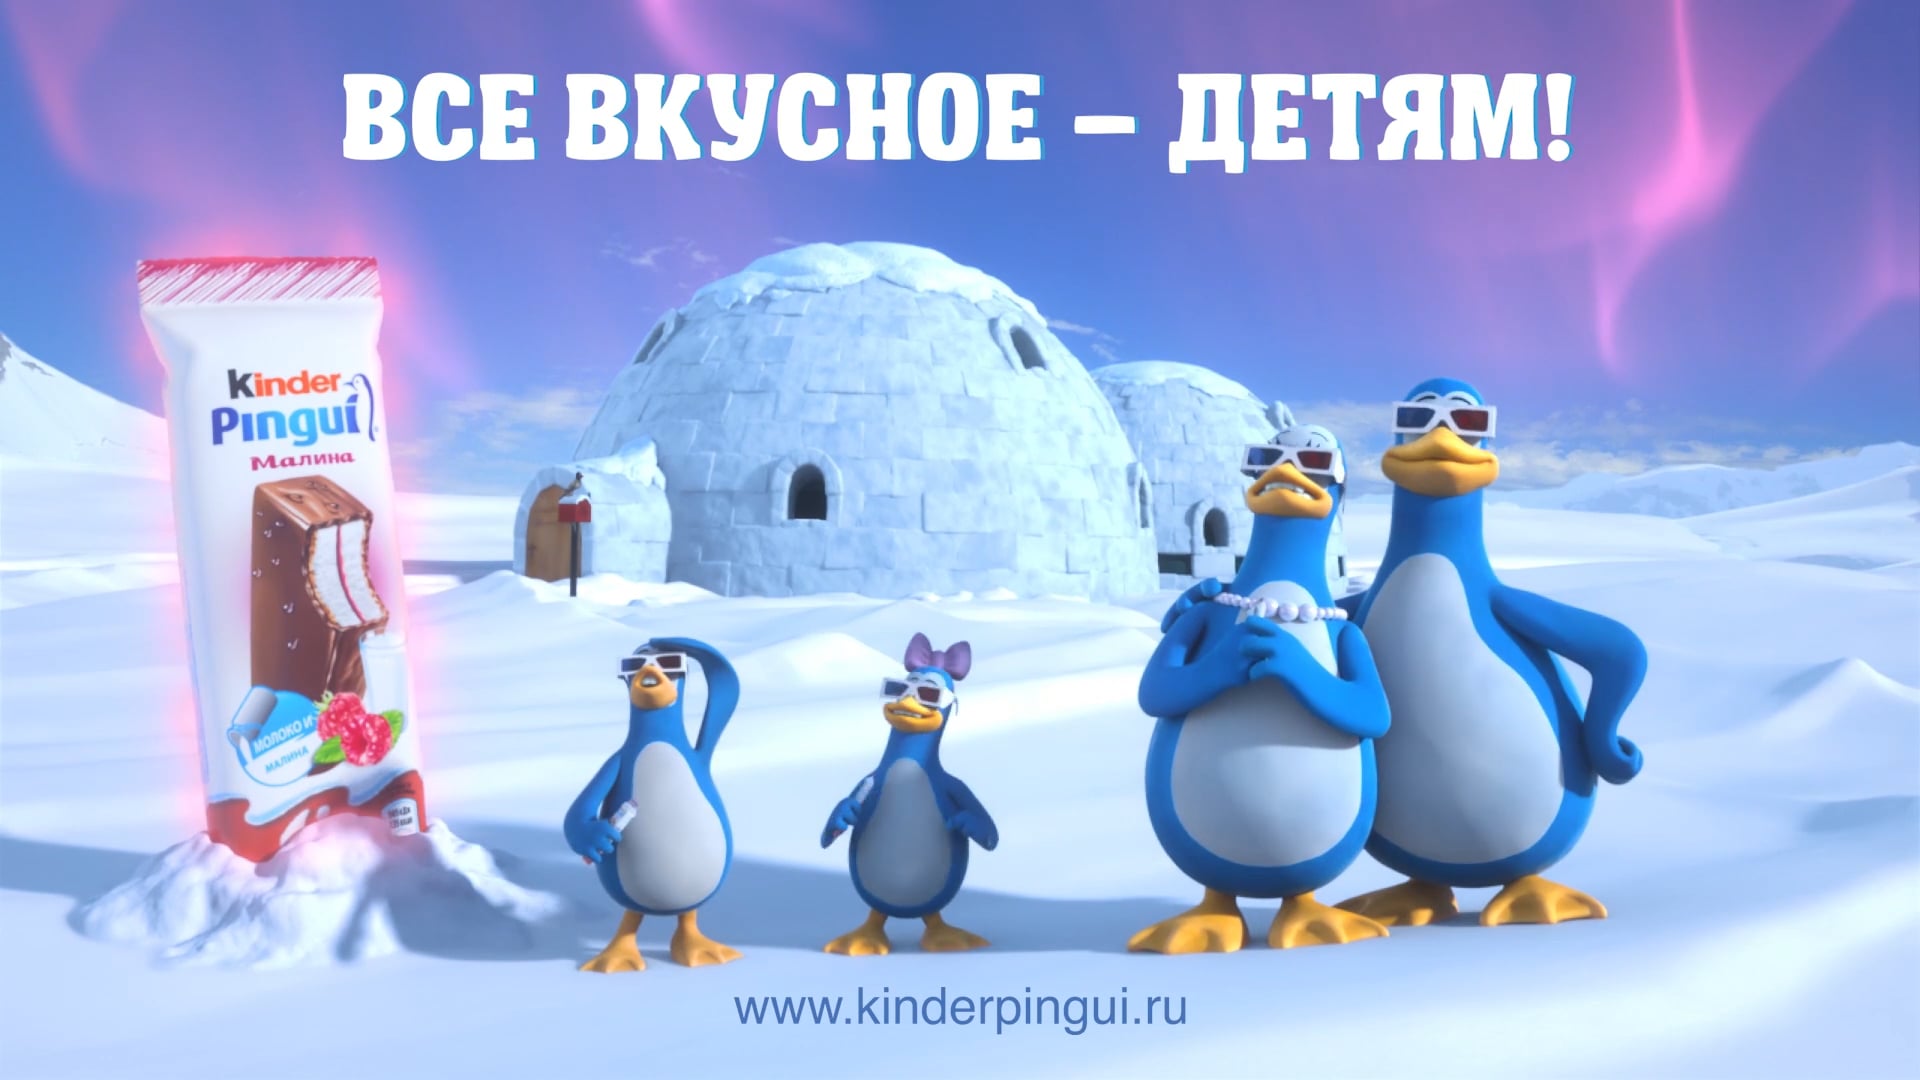 Киндер пингви я люблю. Kinder Pingui пингвины. Киндер Пингви пингвины реклама. Kinder Pingui реклама. Реклама с пингвинами.